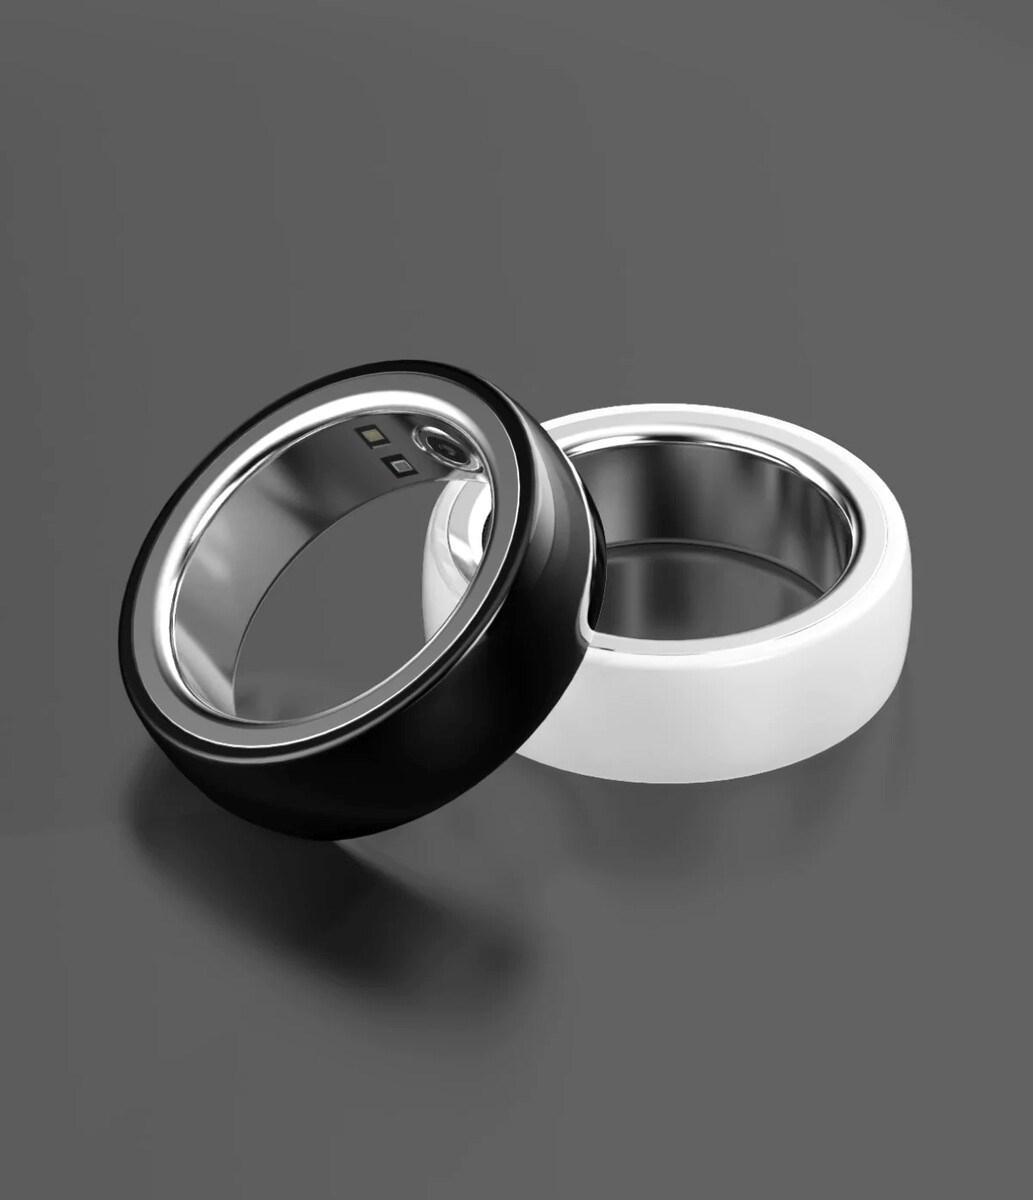 Kospetfit iHeal fitness yüzüğü tanıtıldı